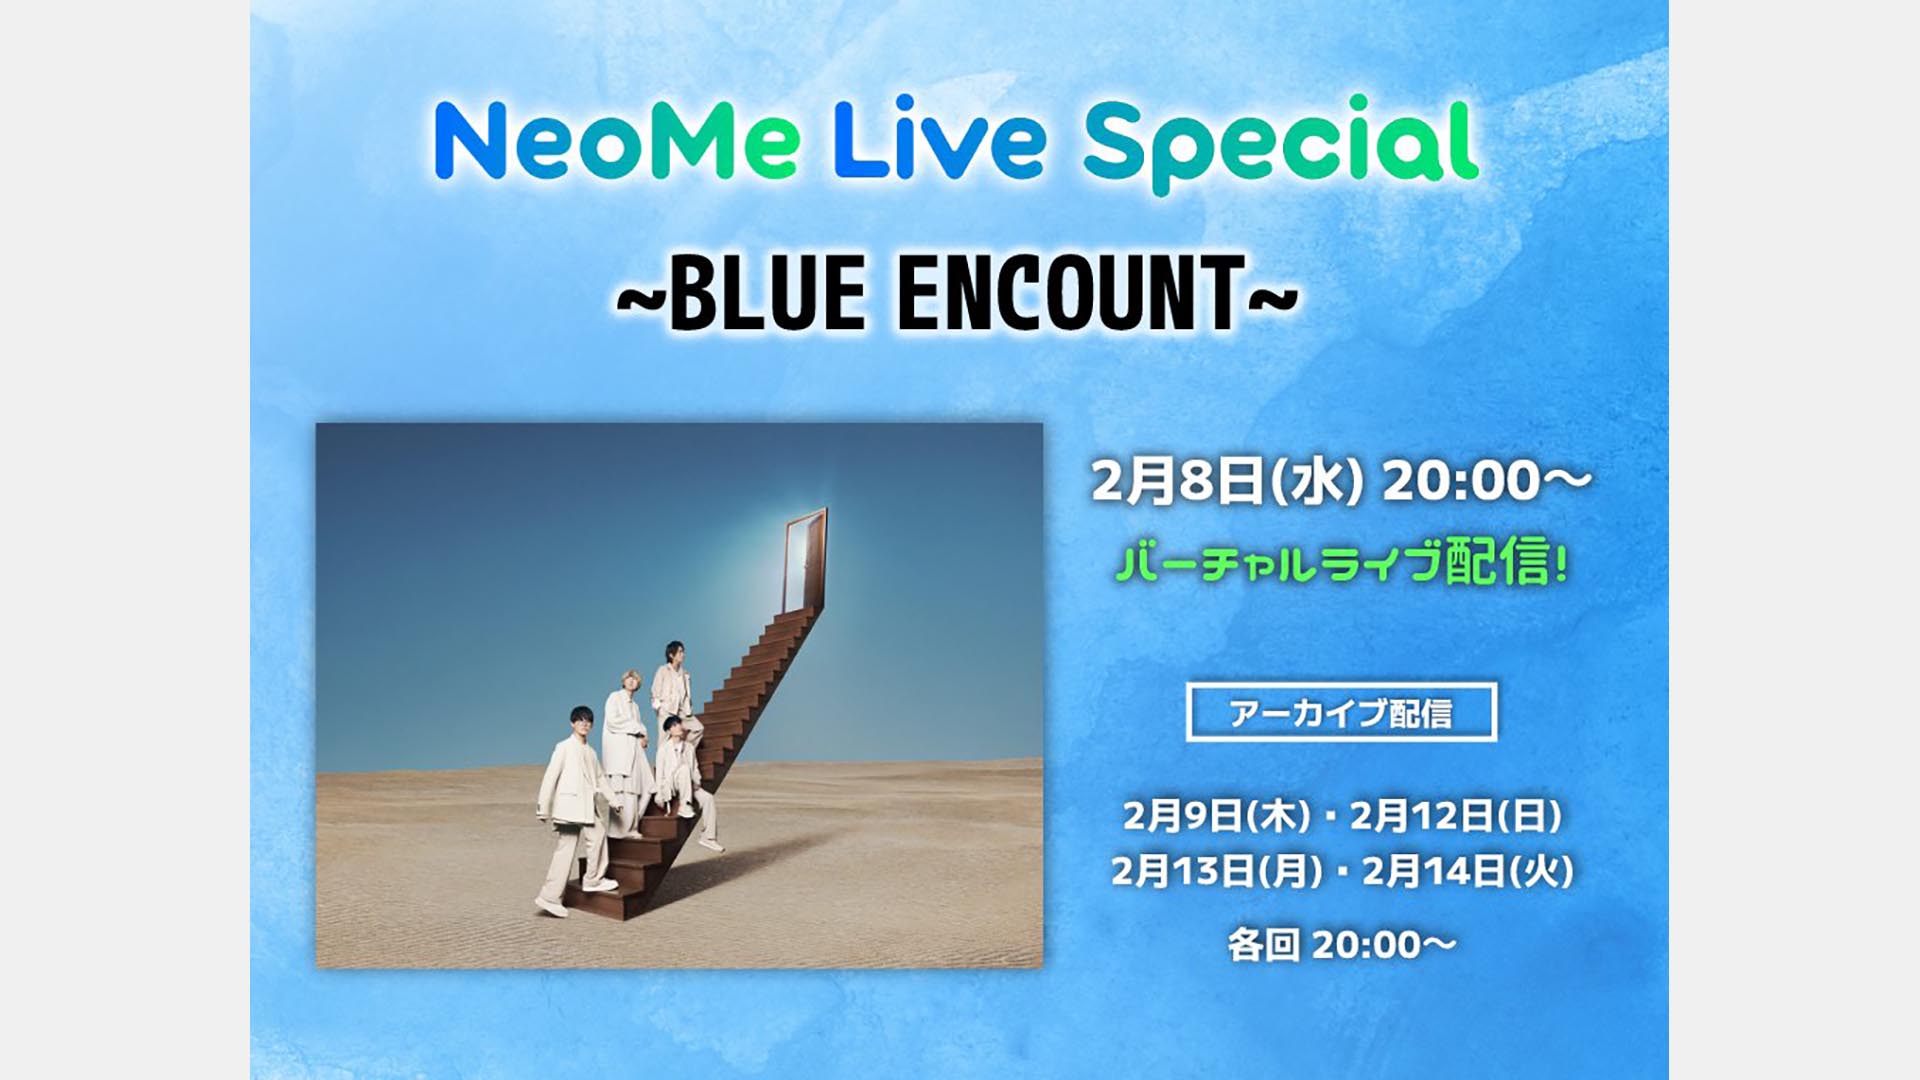 2月8日(水)20:00〜、BLUE ENCOUNT出演・XRライブ「NeoMe Live Special」が配信。